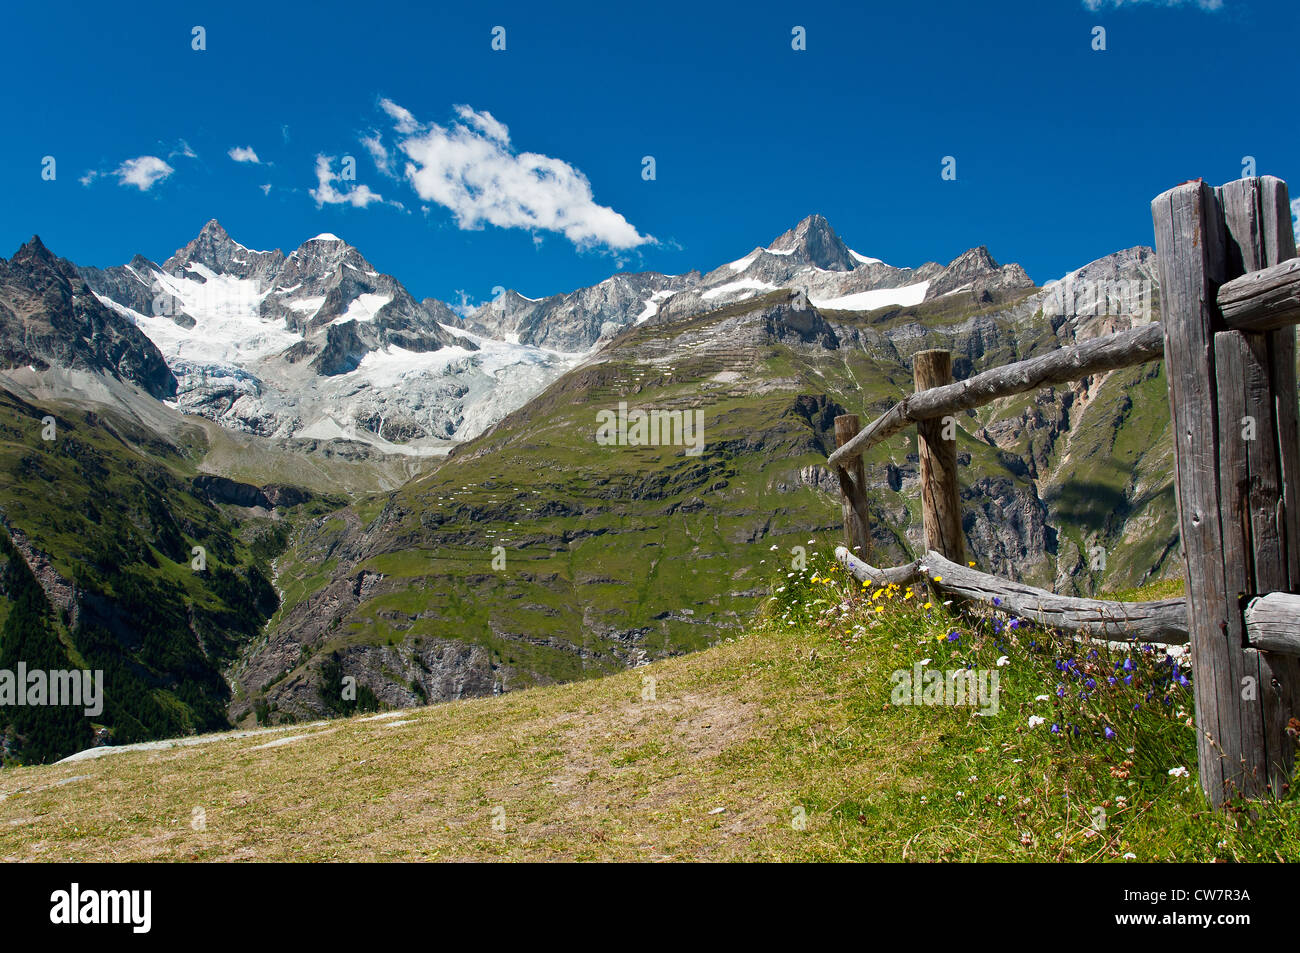 Vue panoramique en été des alpes suisses vus de Sunnegga, Zermatt, Valais, Suisse Banque D'Images